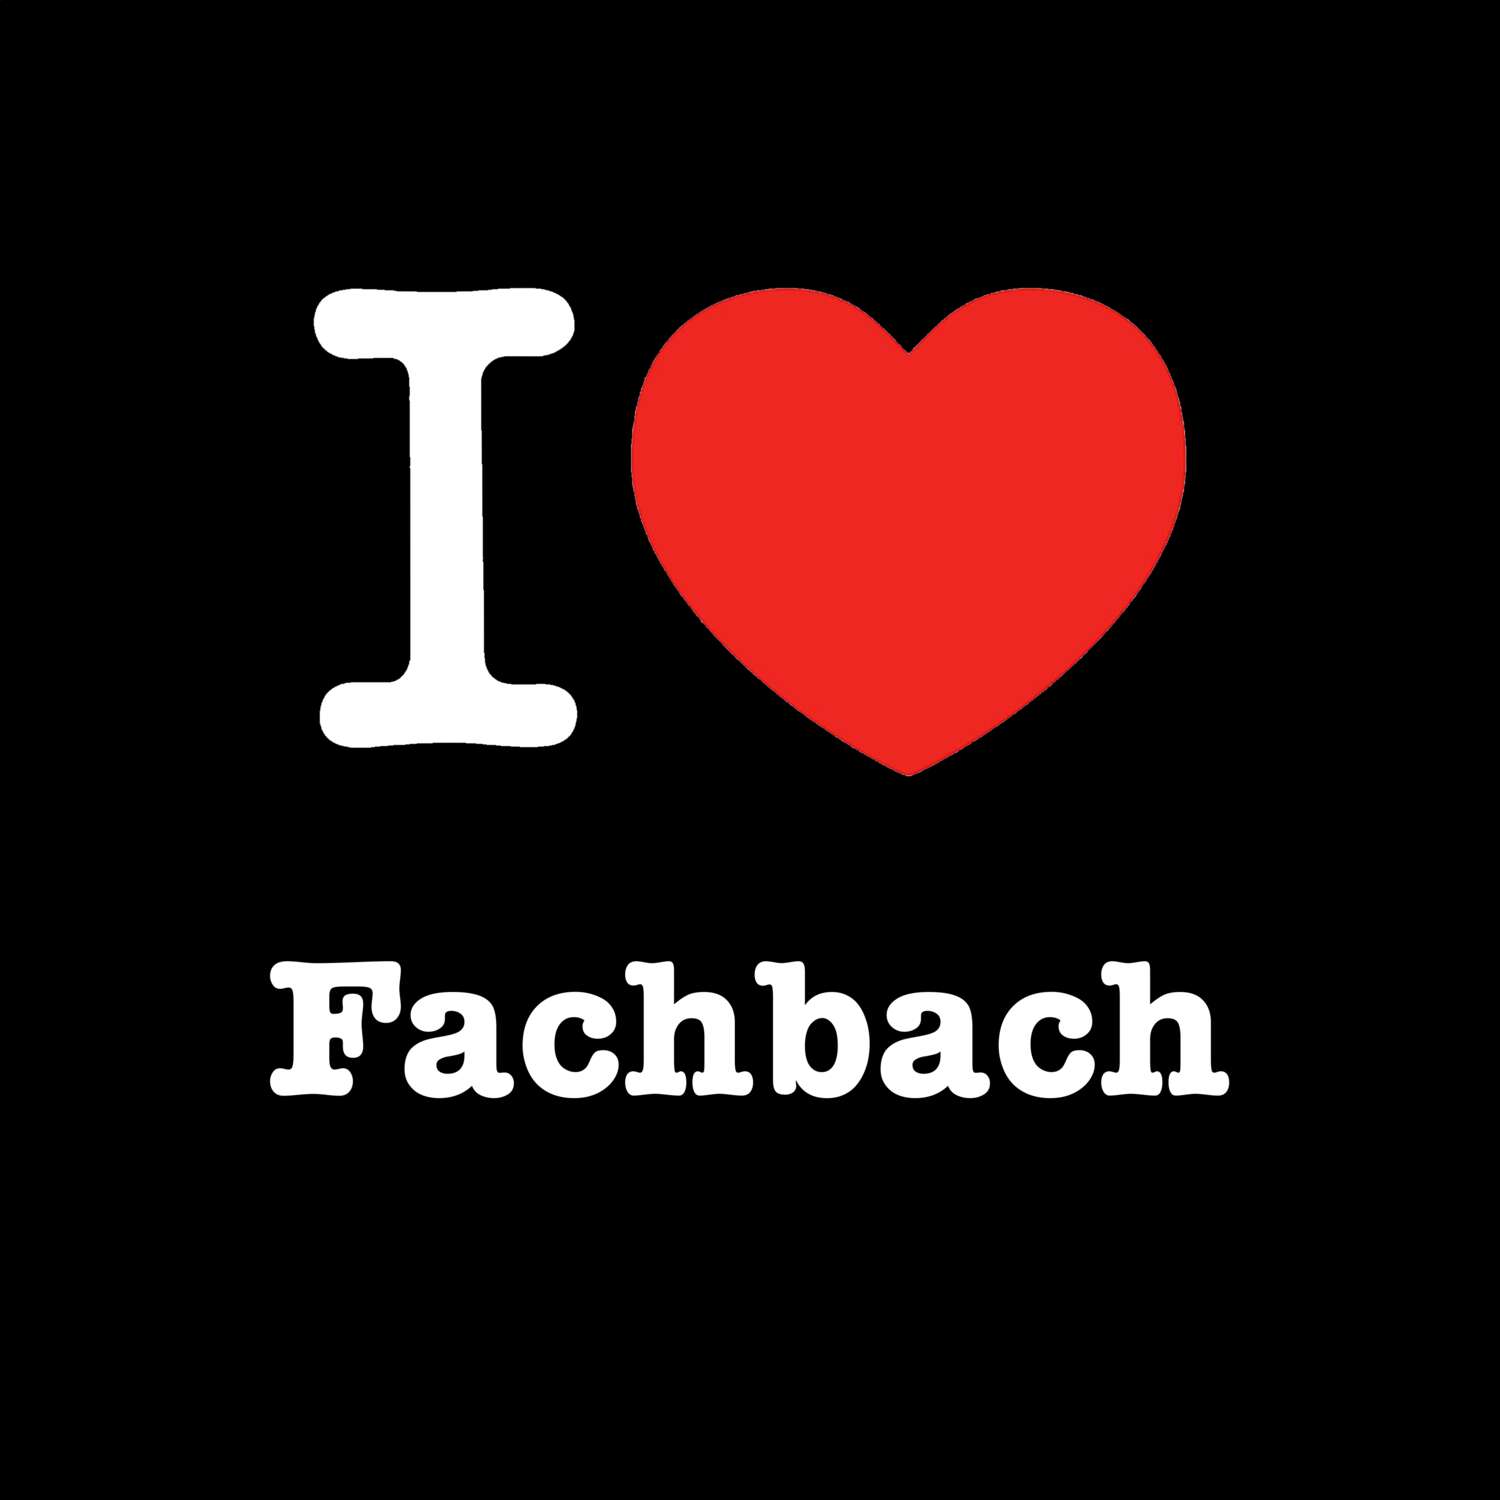 Fachbach T-Shirt »I love«